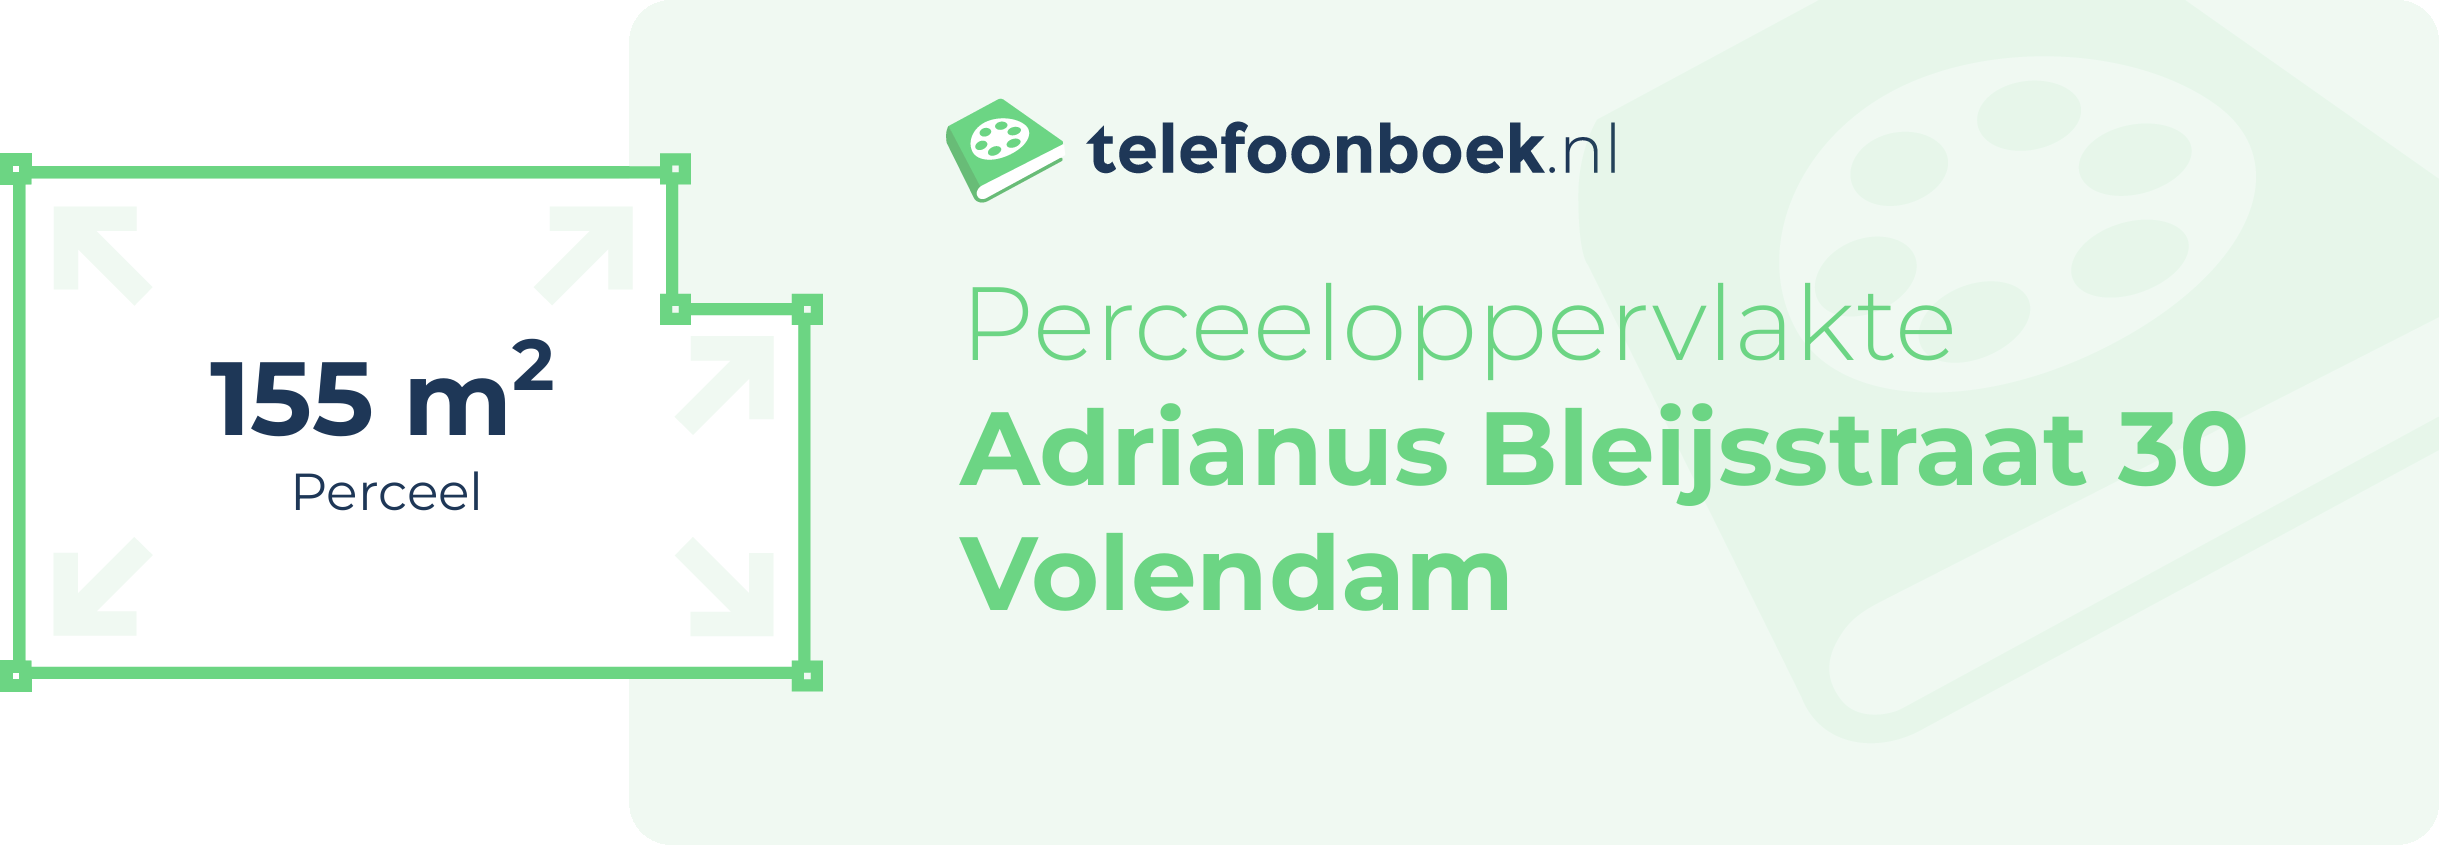 Perceeloppervlakte Adrianus Bleijsstraat 30 Volendam